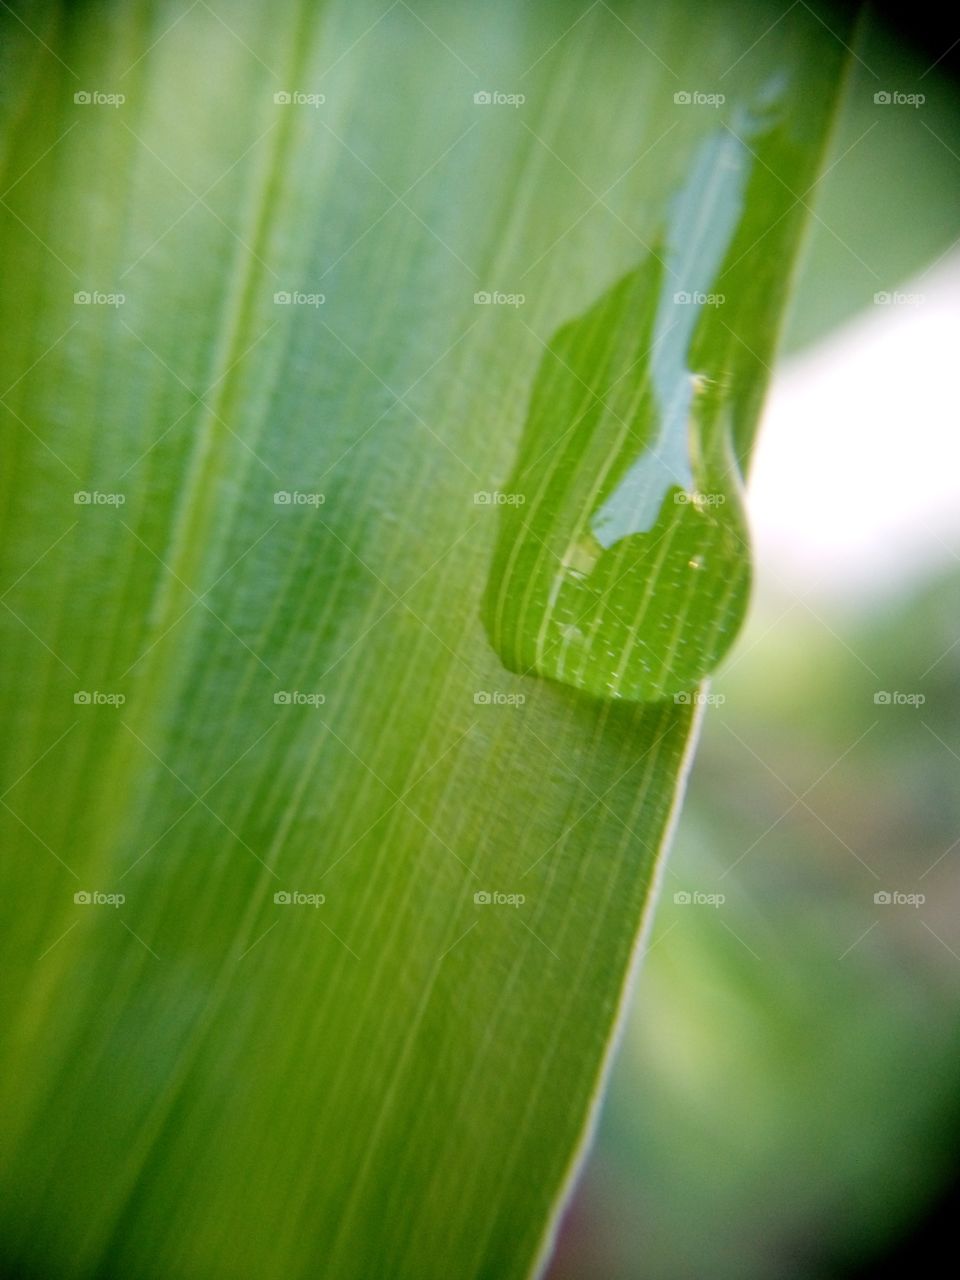 water droplet on ginger leaf